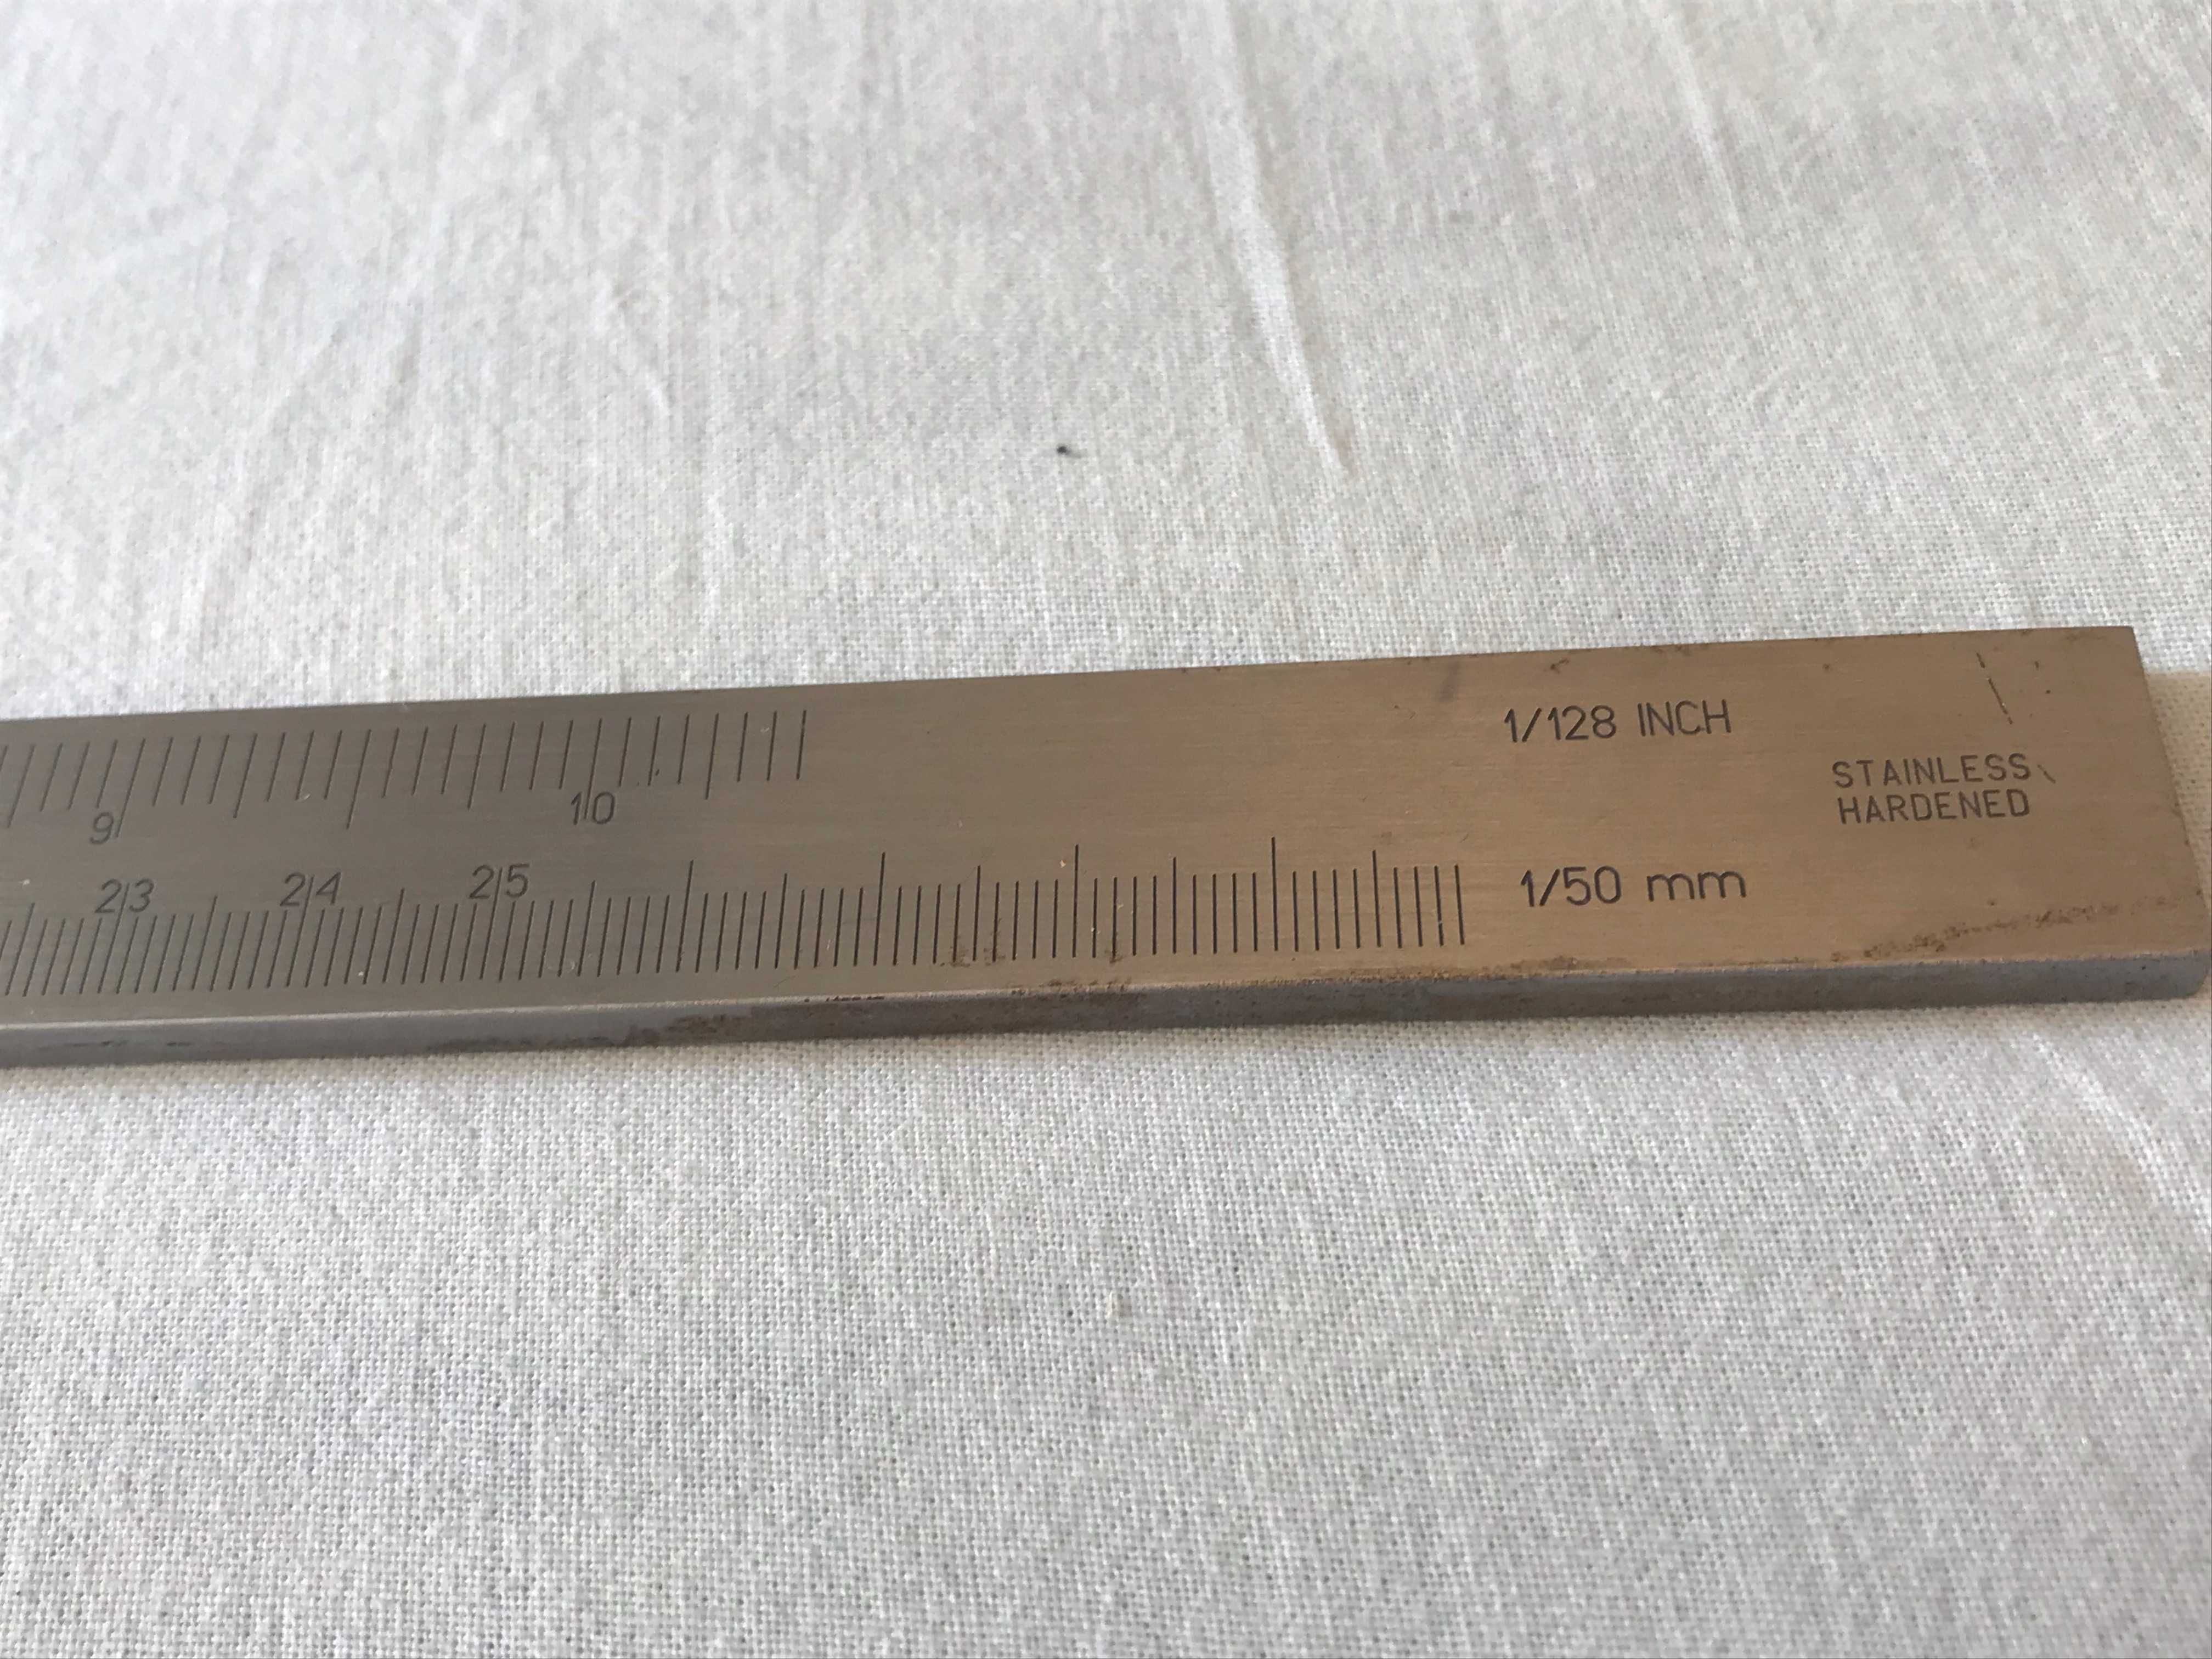 Suwmiarka VIS , duża - 250 mmm , dokładność 2/100 mm